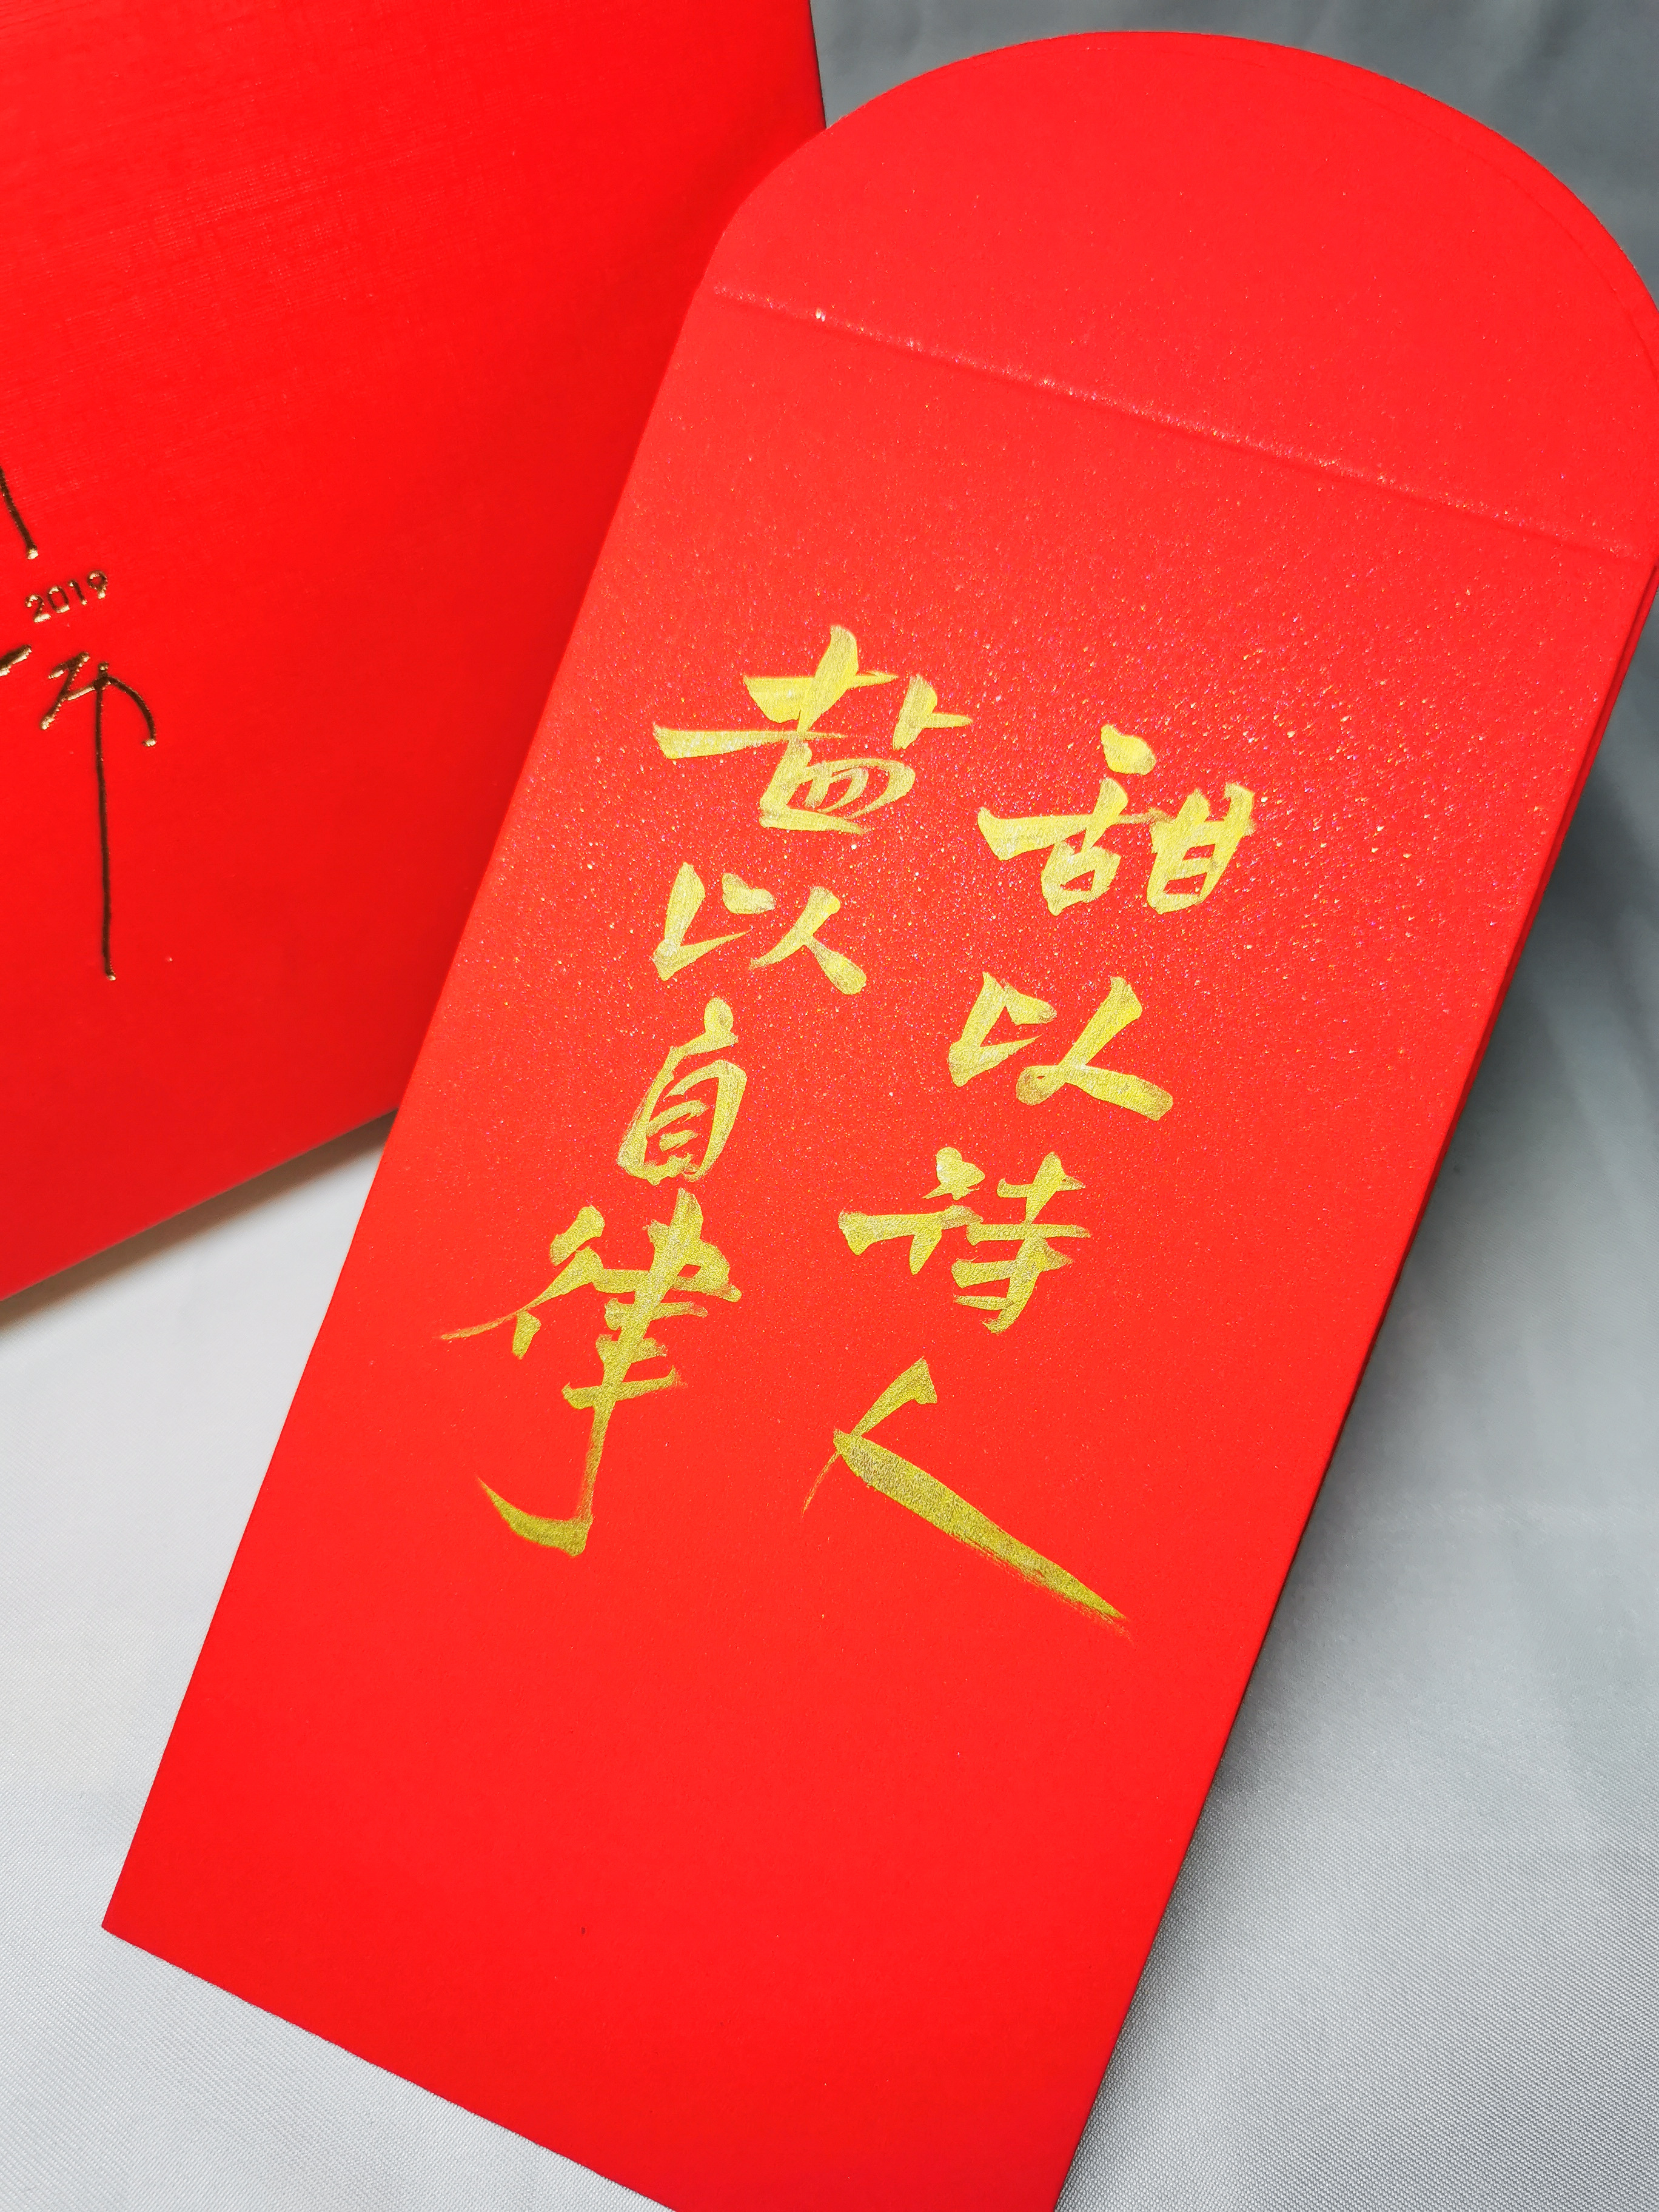 中式新婚结婚婚礼婚庆红包设计图片下载 - 觅知网